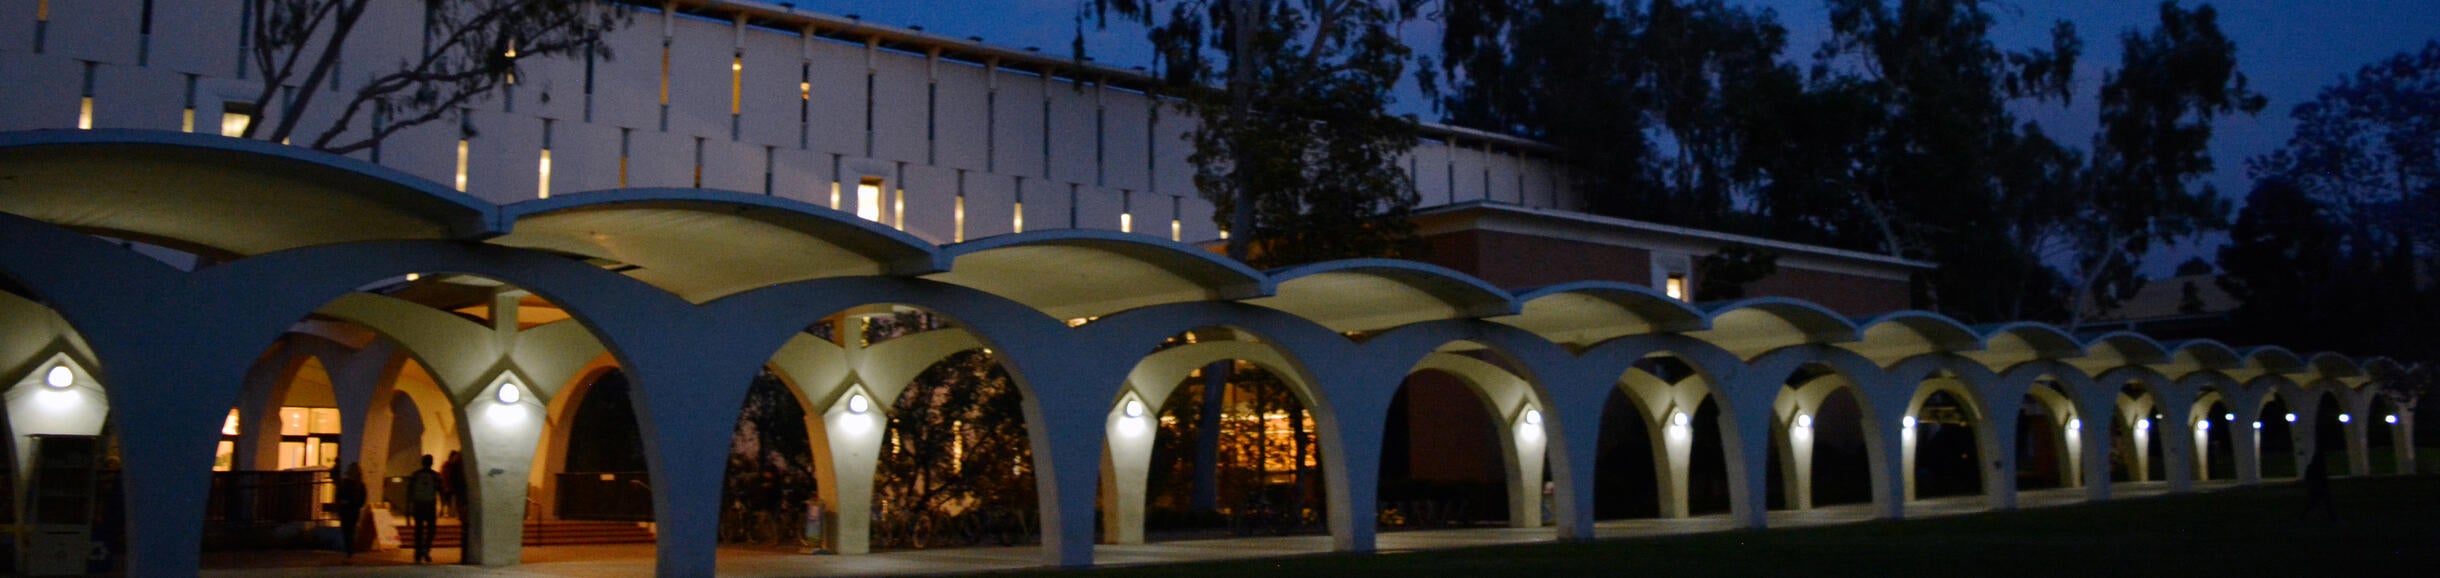 Rivera Library arches